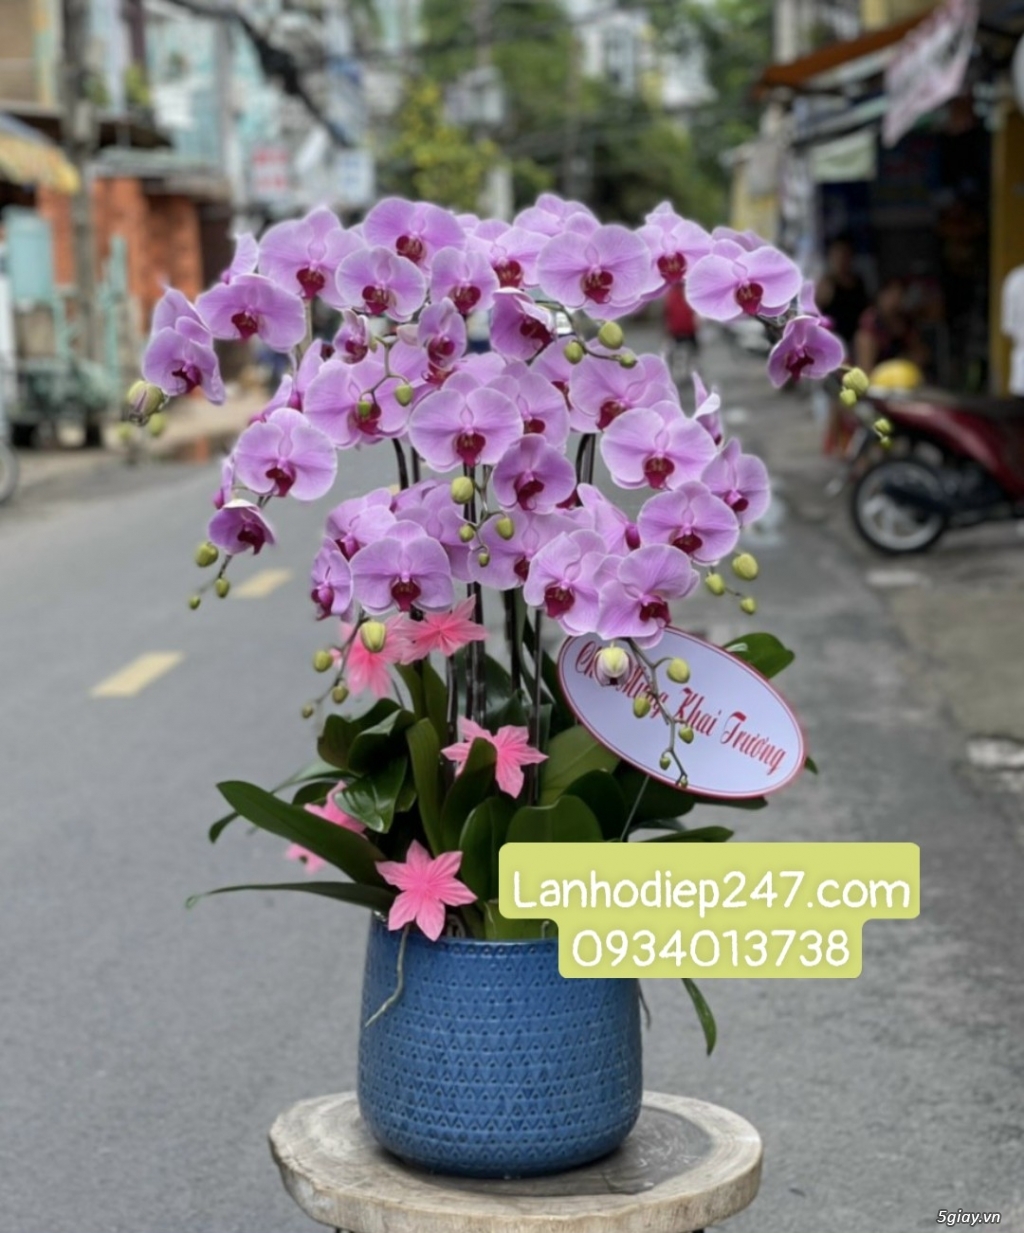 Địa chỉ mua hoa lan hồ điệp Apollo cao cấp uy tín tại Sài Gòn - 2